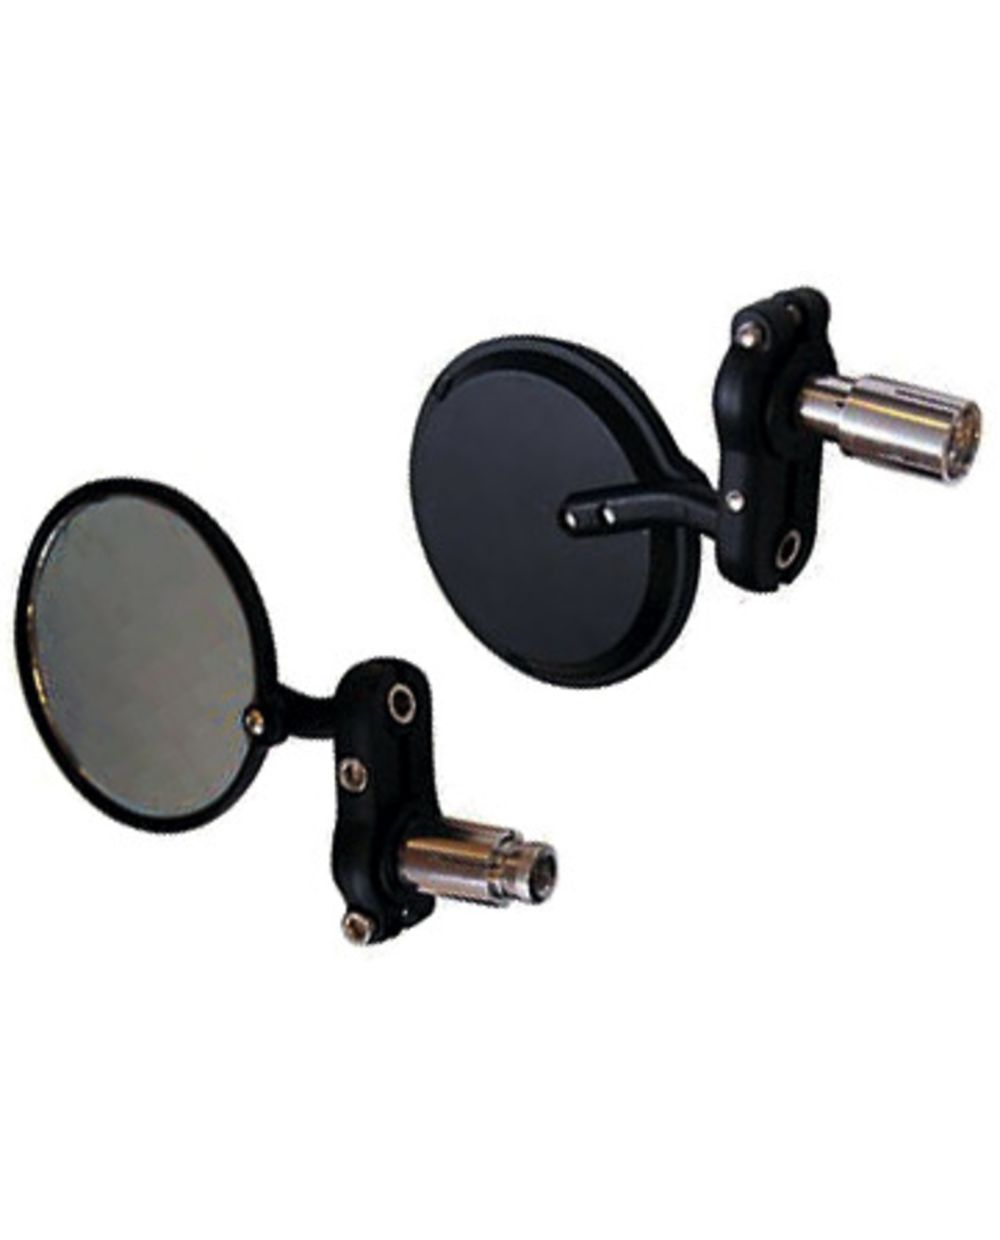 Lenkerendenspiegel, rund, Aluminium schwarz, 1 Paar li/re, Spiegelfläche  83mm Durchmesser, Lenkerinnen- Durchmesser mind. 13mm